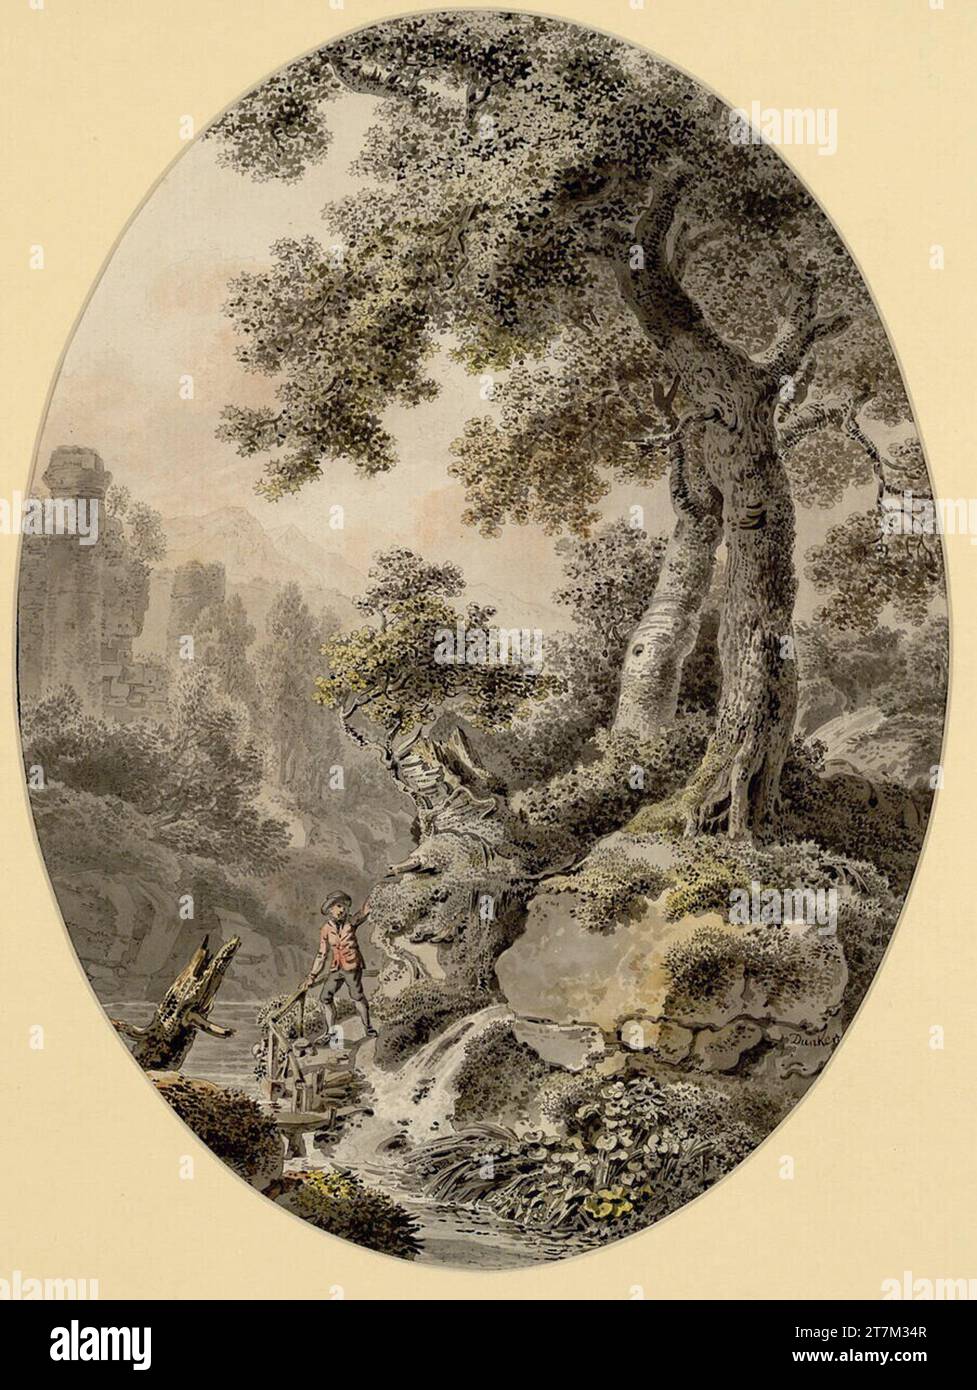 Balthasar Anton Dunker Paysage avec deux chênes, des ruines et des gars migrants sur la rive de la rivière. Plume et pinceau en noir et gris, laviobied, aquarelle, lavage à la craie rouge, sur traces de crayons ; ligne de bordure noire vers 1800 Banque D'Images